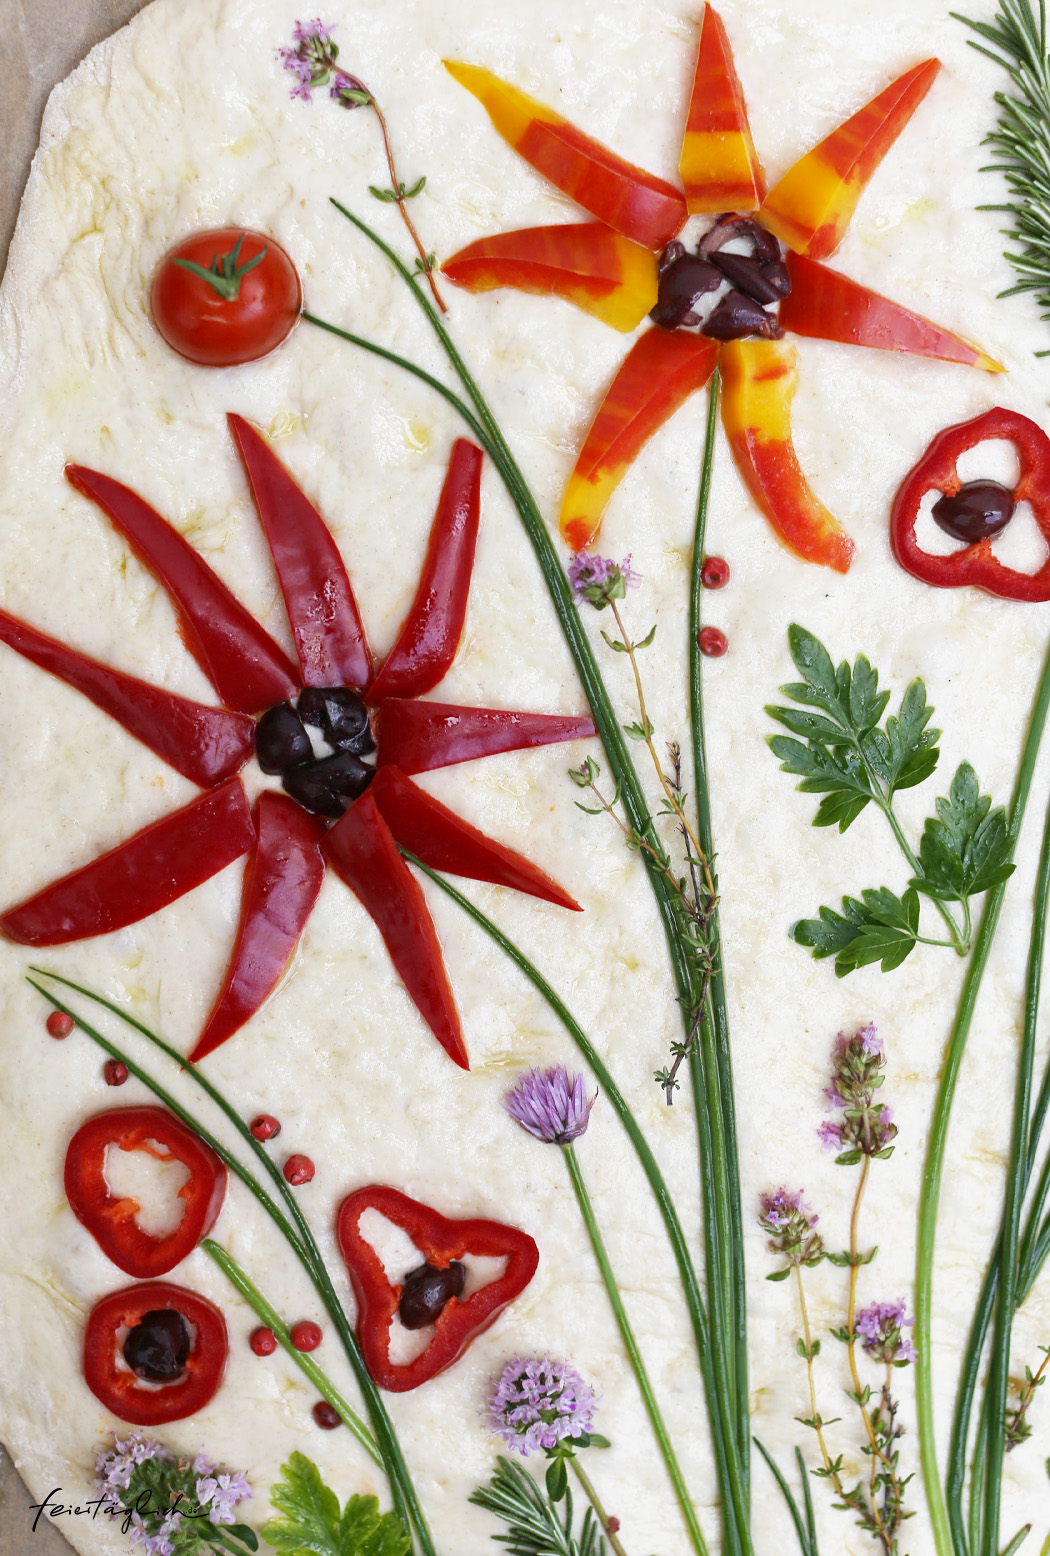 Focaccia mit Blumen, der Foodtrend #focacciagarden – ein Rezept für eine fabelhafte Focaccia mit Sauerteig